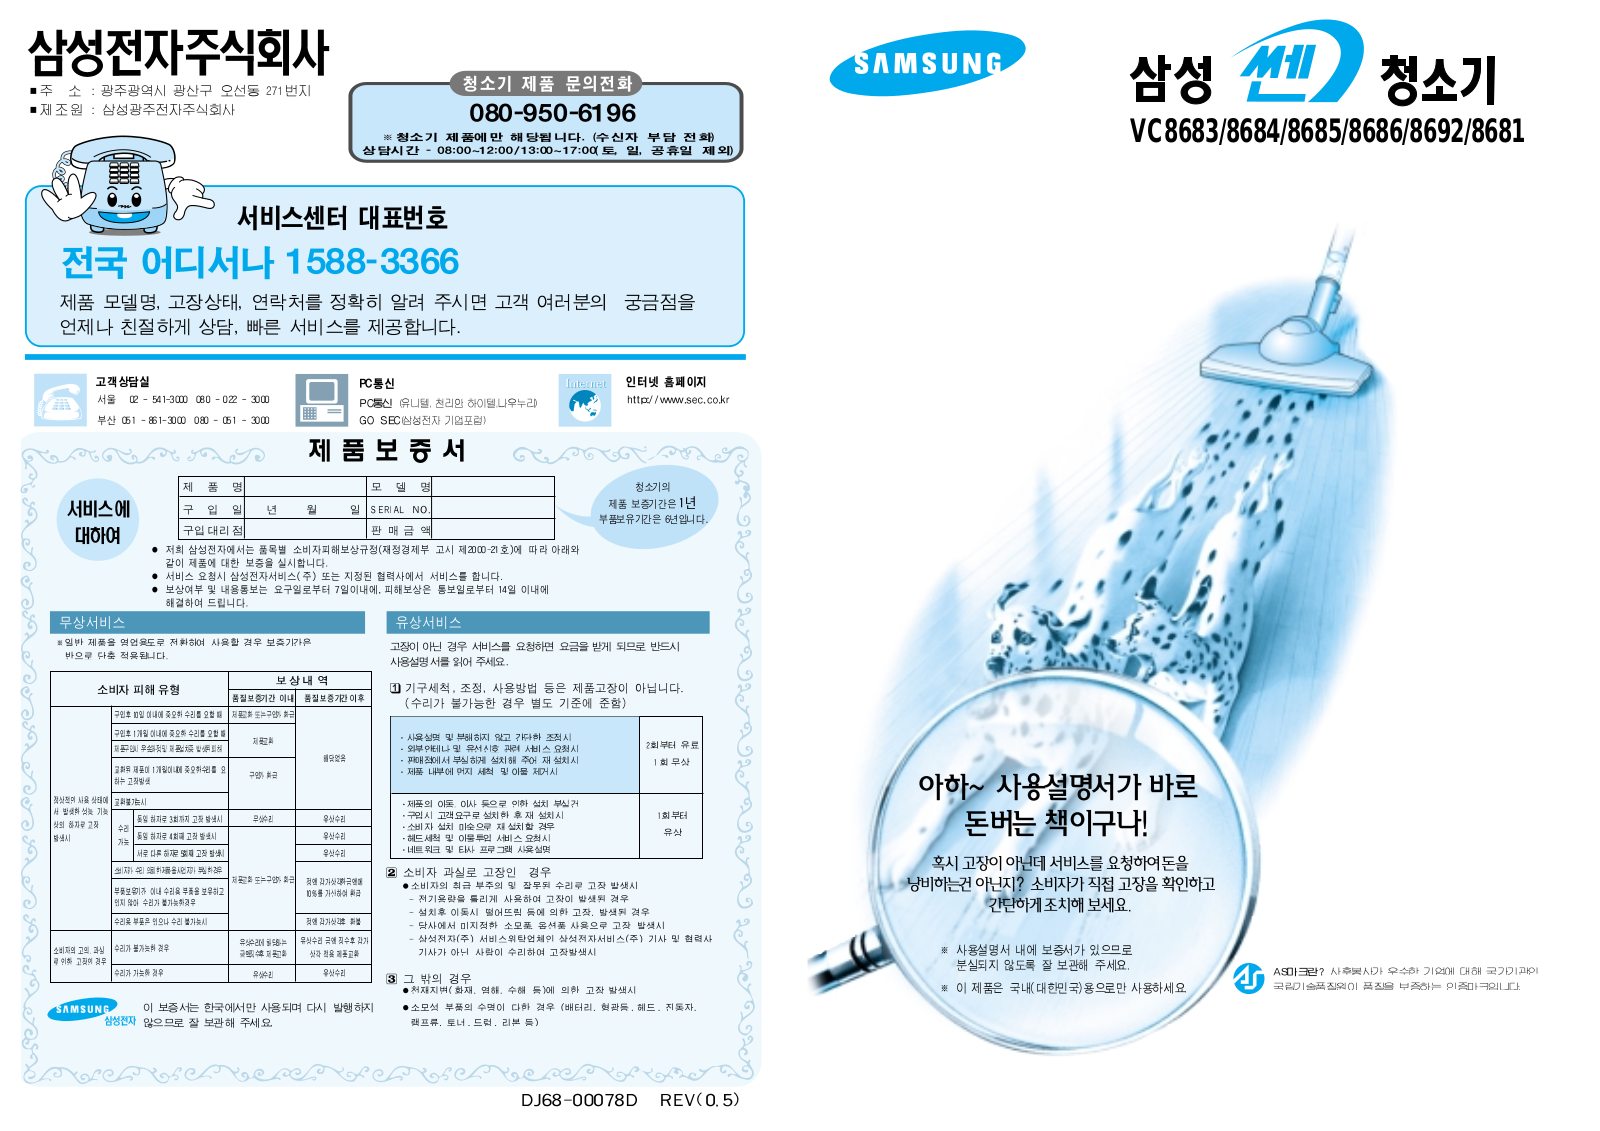 Samsung VC-8684, VC-8692, VC-8681 Manual